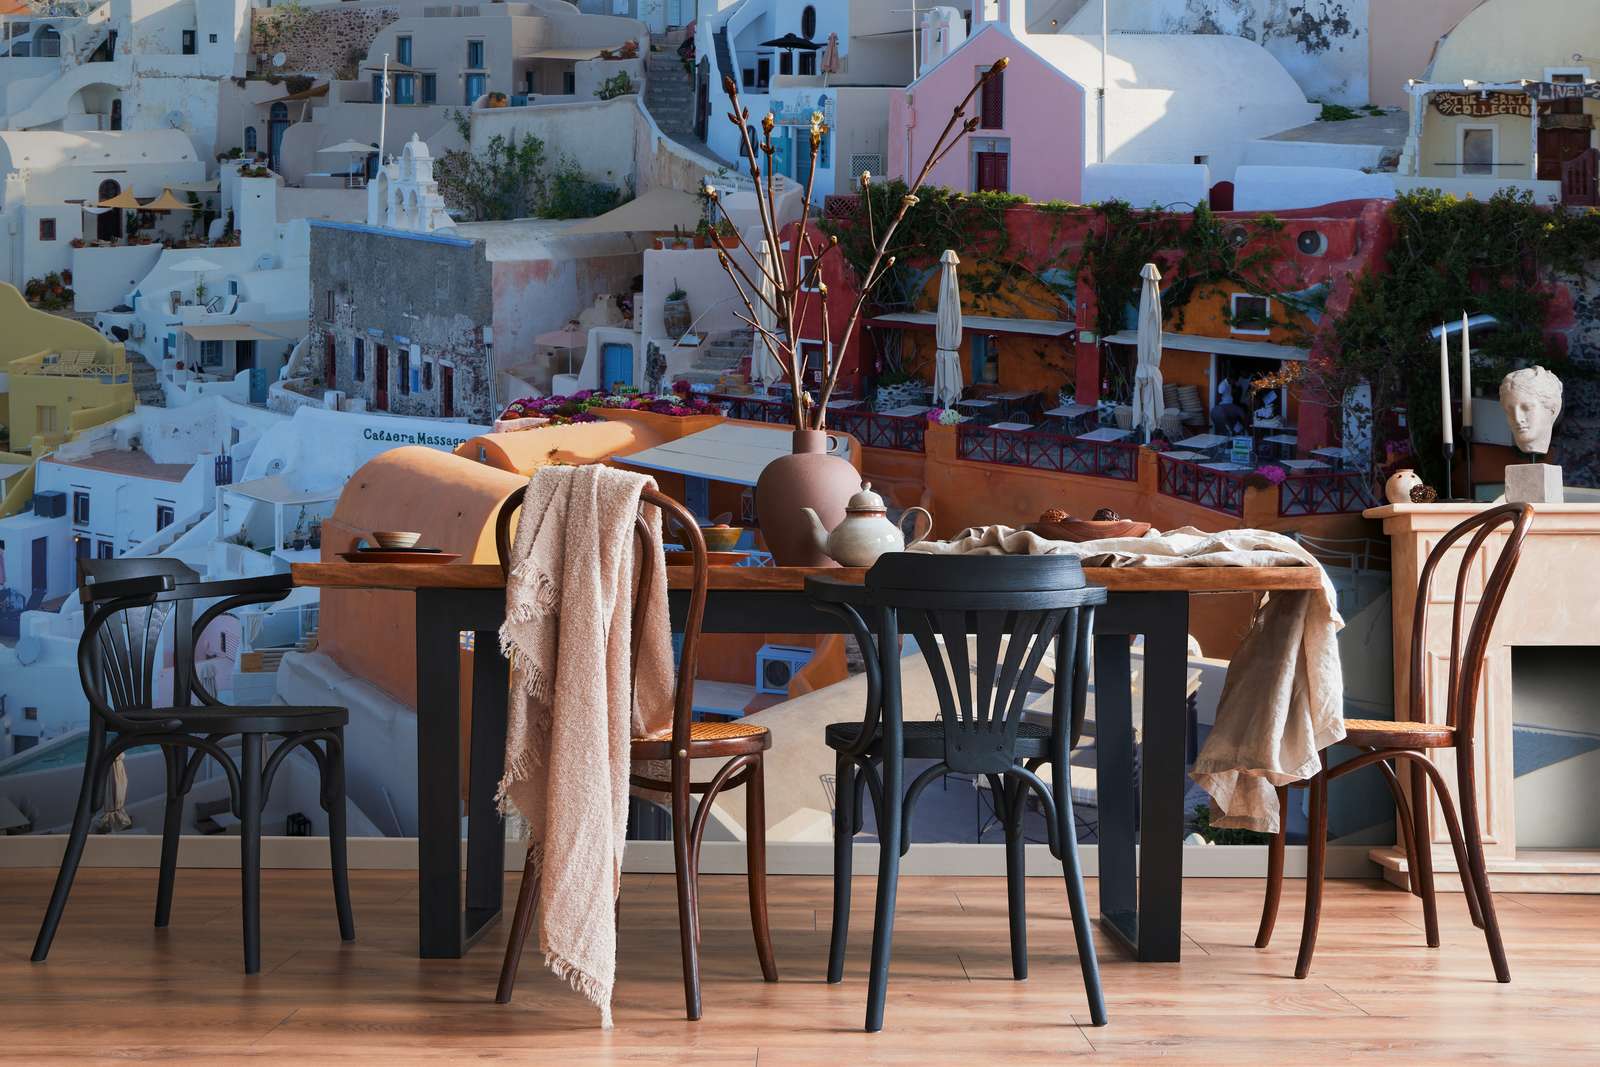             Fototapete Häuser von Santorini – Struktur Vlies
        